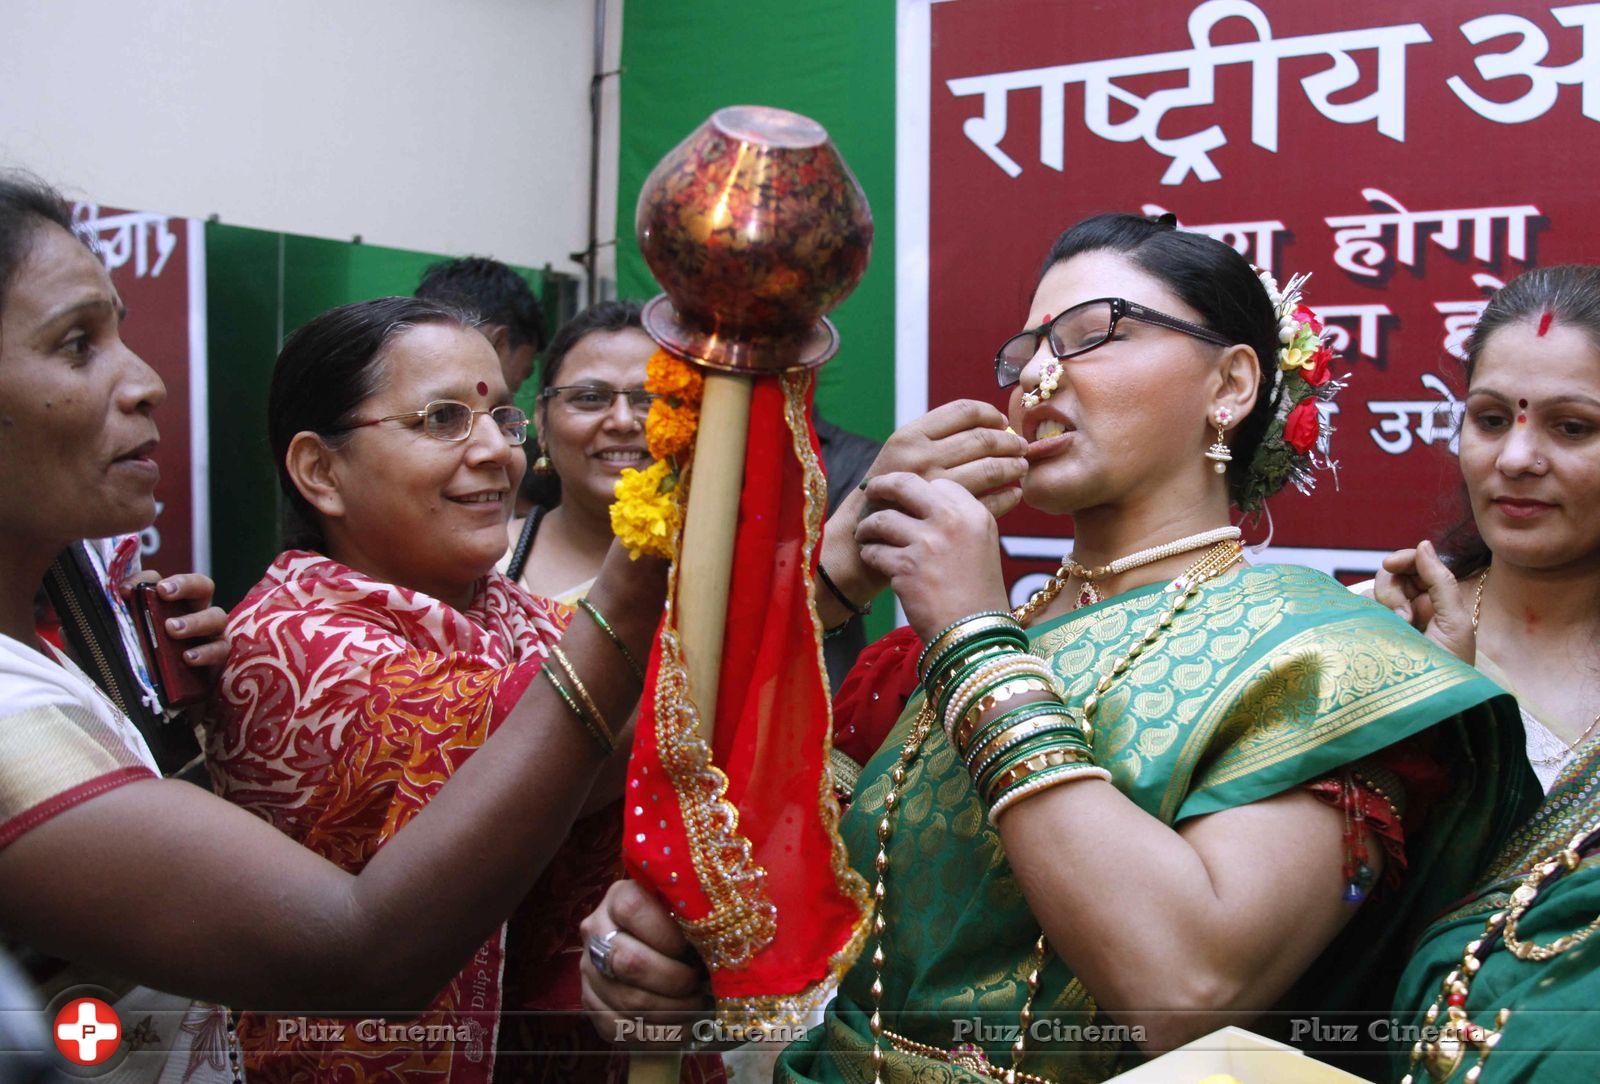 Rakhi Sawant - Rakhi Sawant celebrates Gudi Padwa Photos | Picture 737315